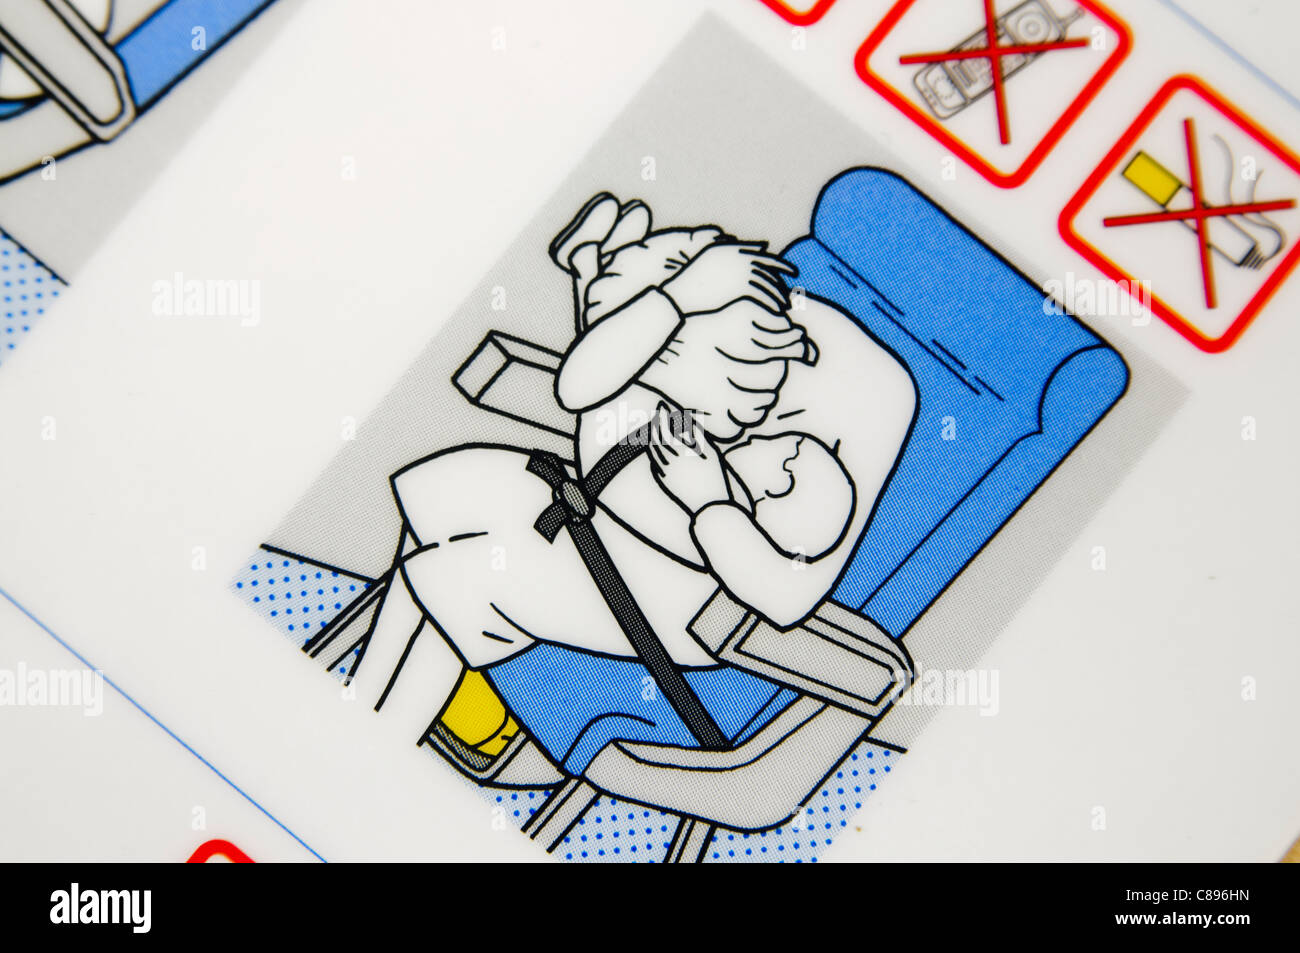 Nahaufnahme einer Airline Sicherheit Karte zeigt die Position der "Klammer" Stockfoto